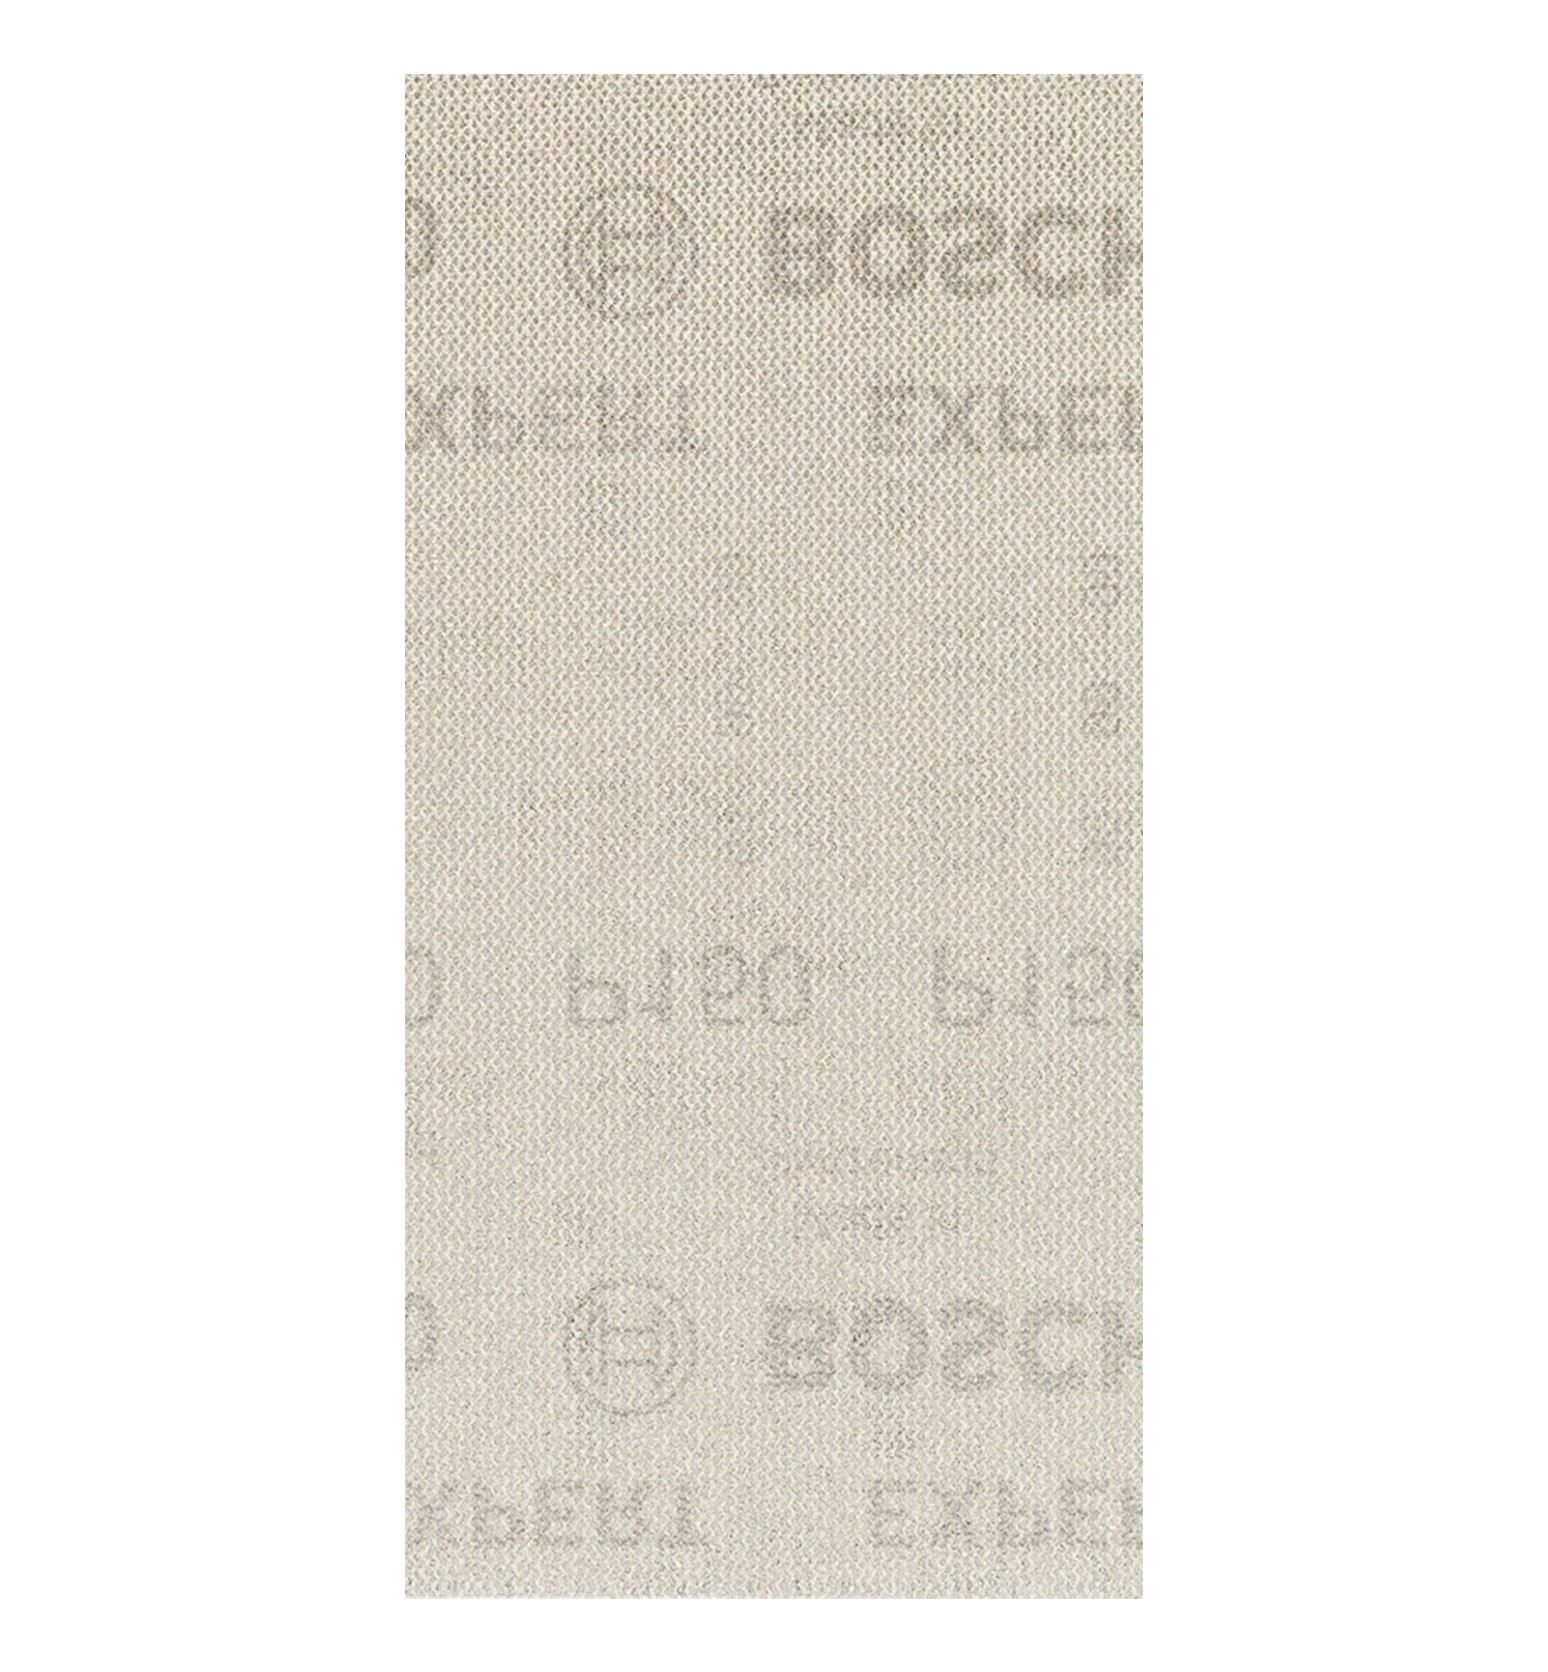 Bosch M480 93x186 mm 150 kum Elek Telli Ağ Zımpara 2608900746